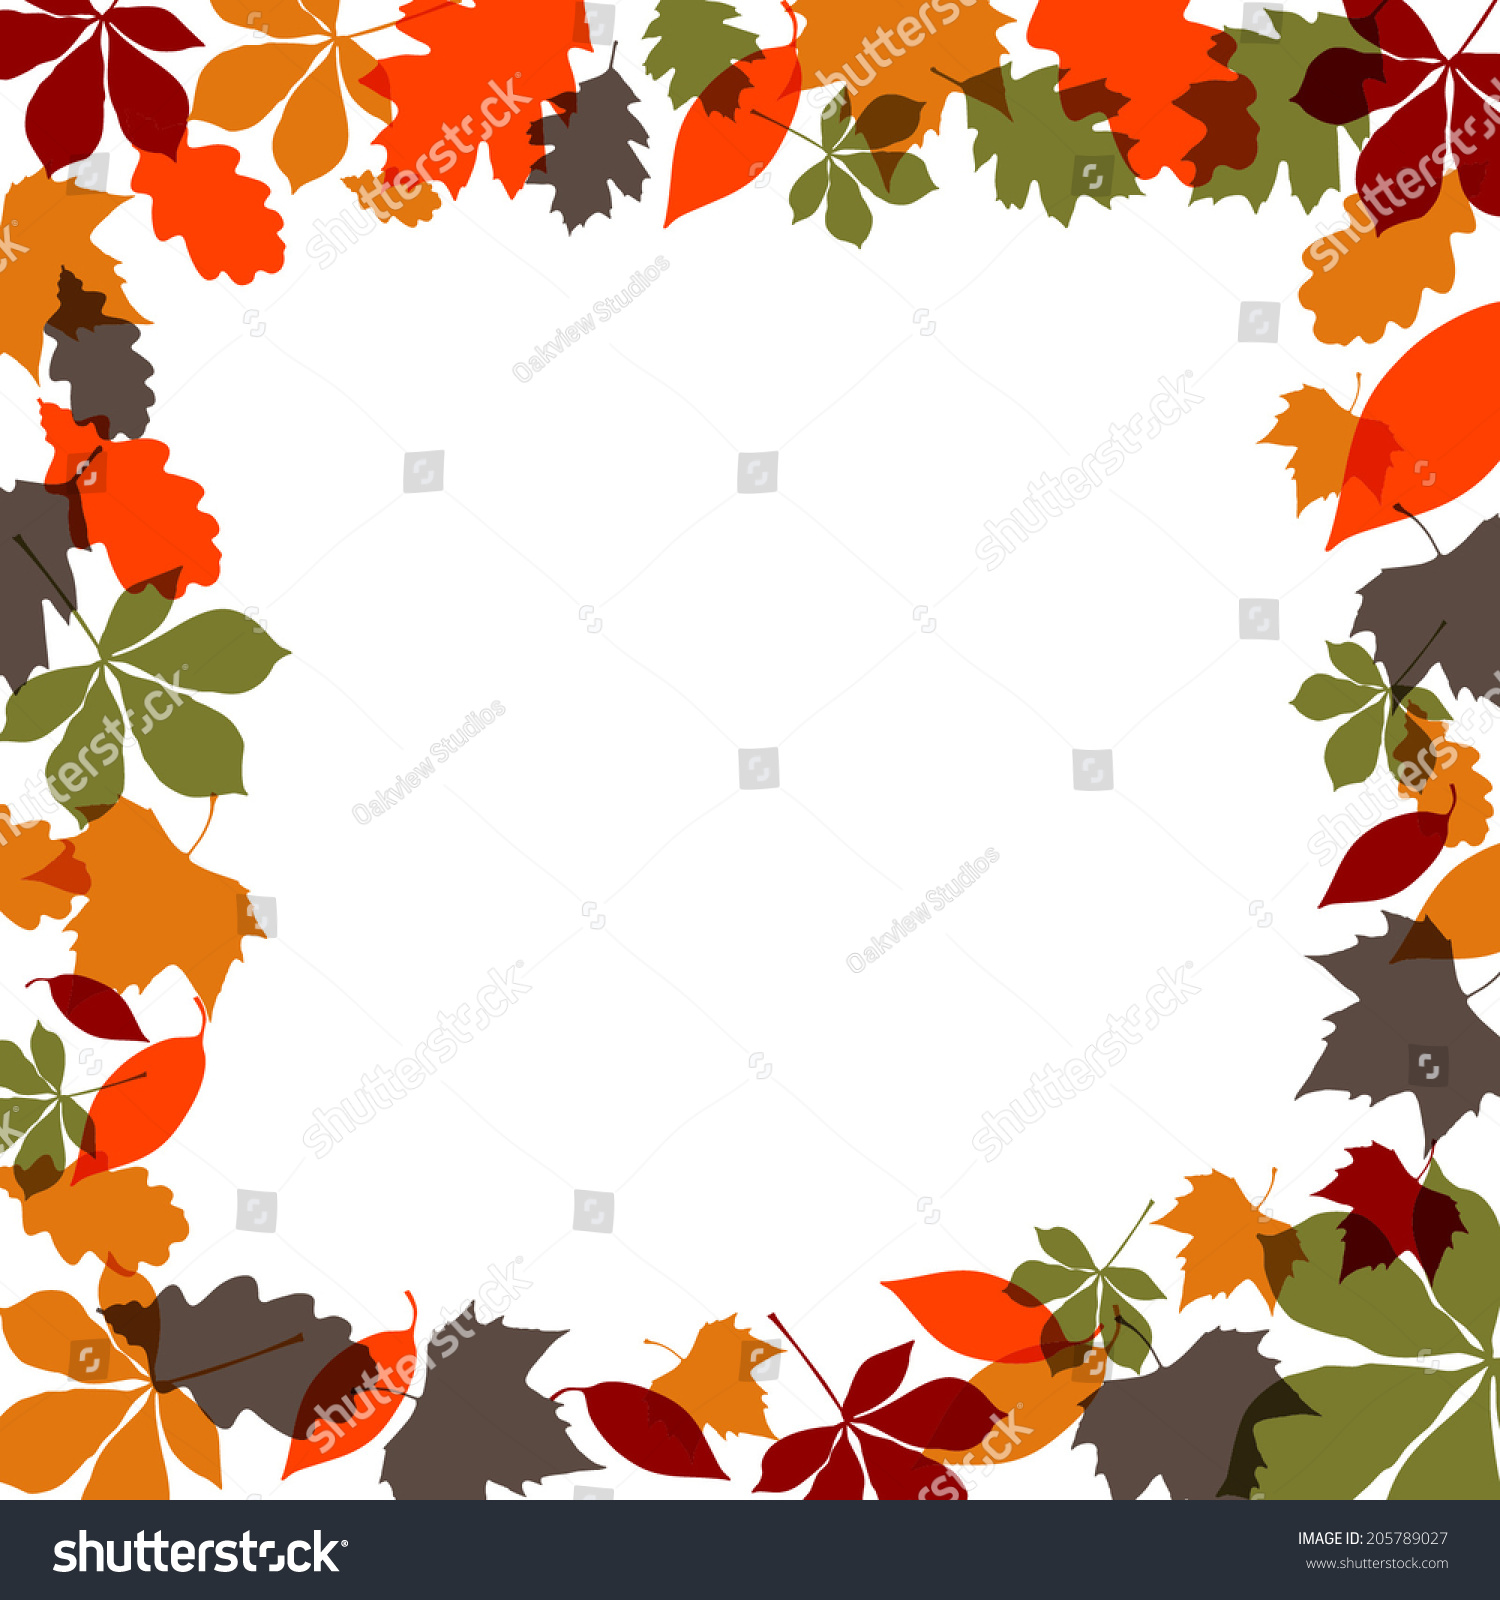 Autumn Leaves Border Stock Vector 205789027 - Shutterstock